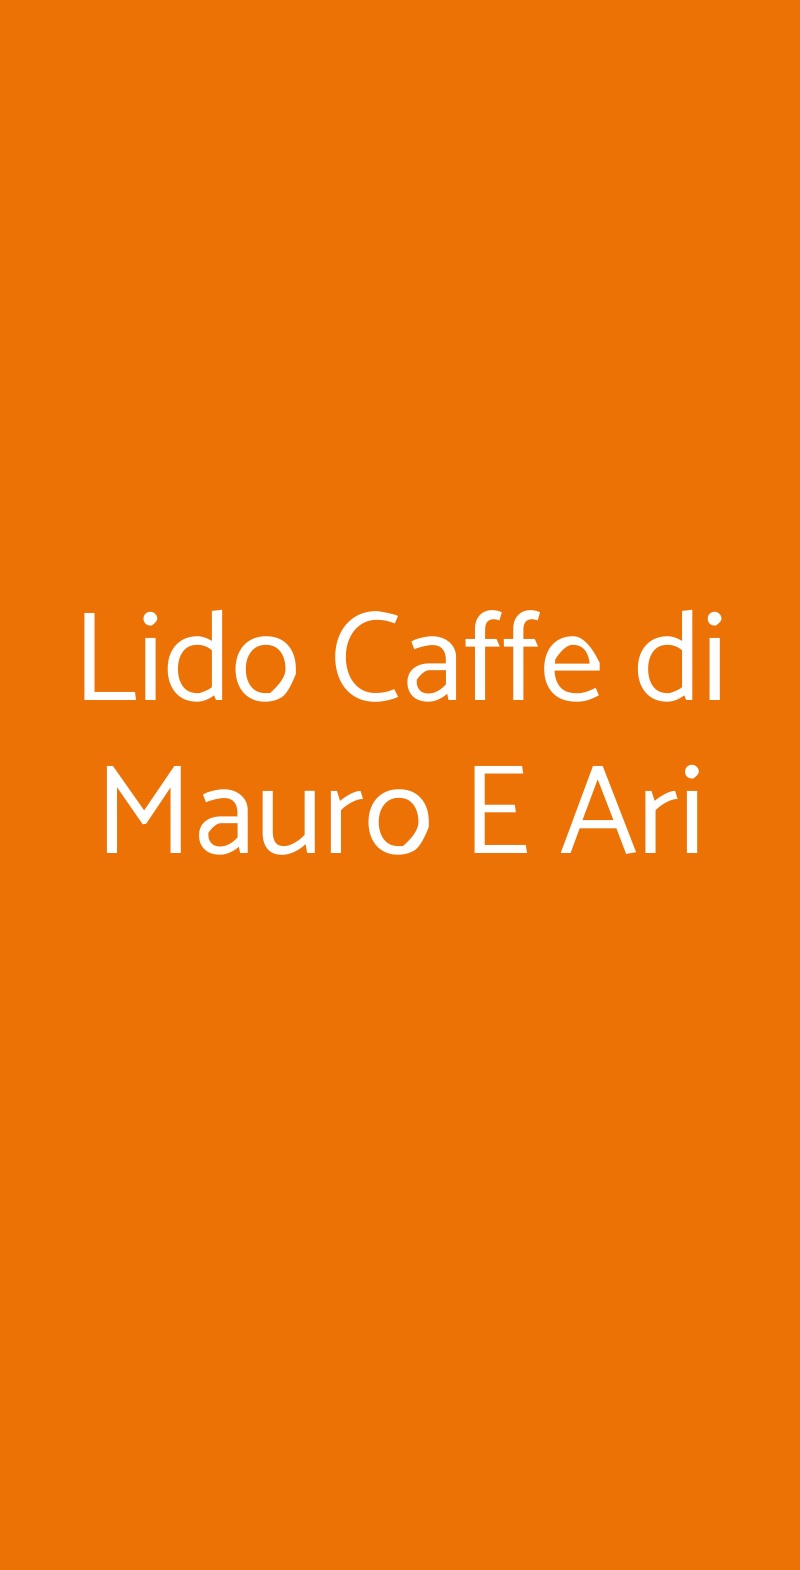 Lido Caffe di Mauro E Ari Cannero Riviera menù 1 pagina